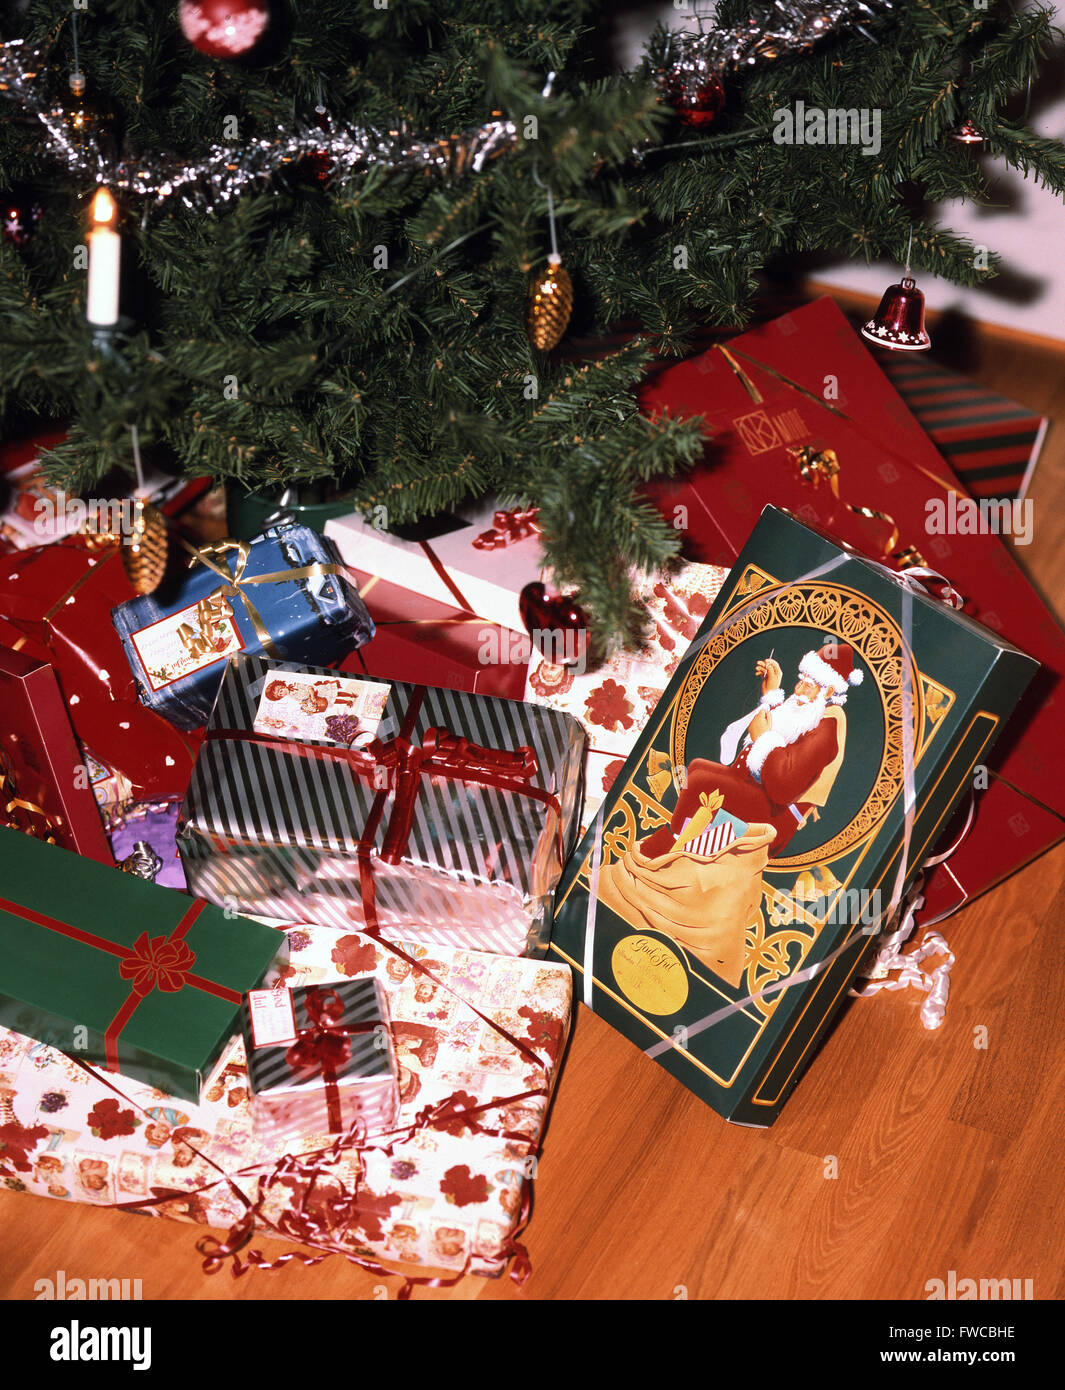 Regalos navideños bajo el árbol de Navidad Foto de stock